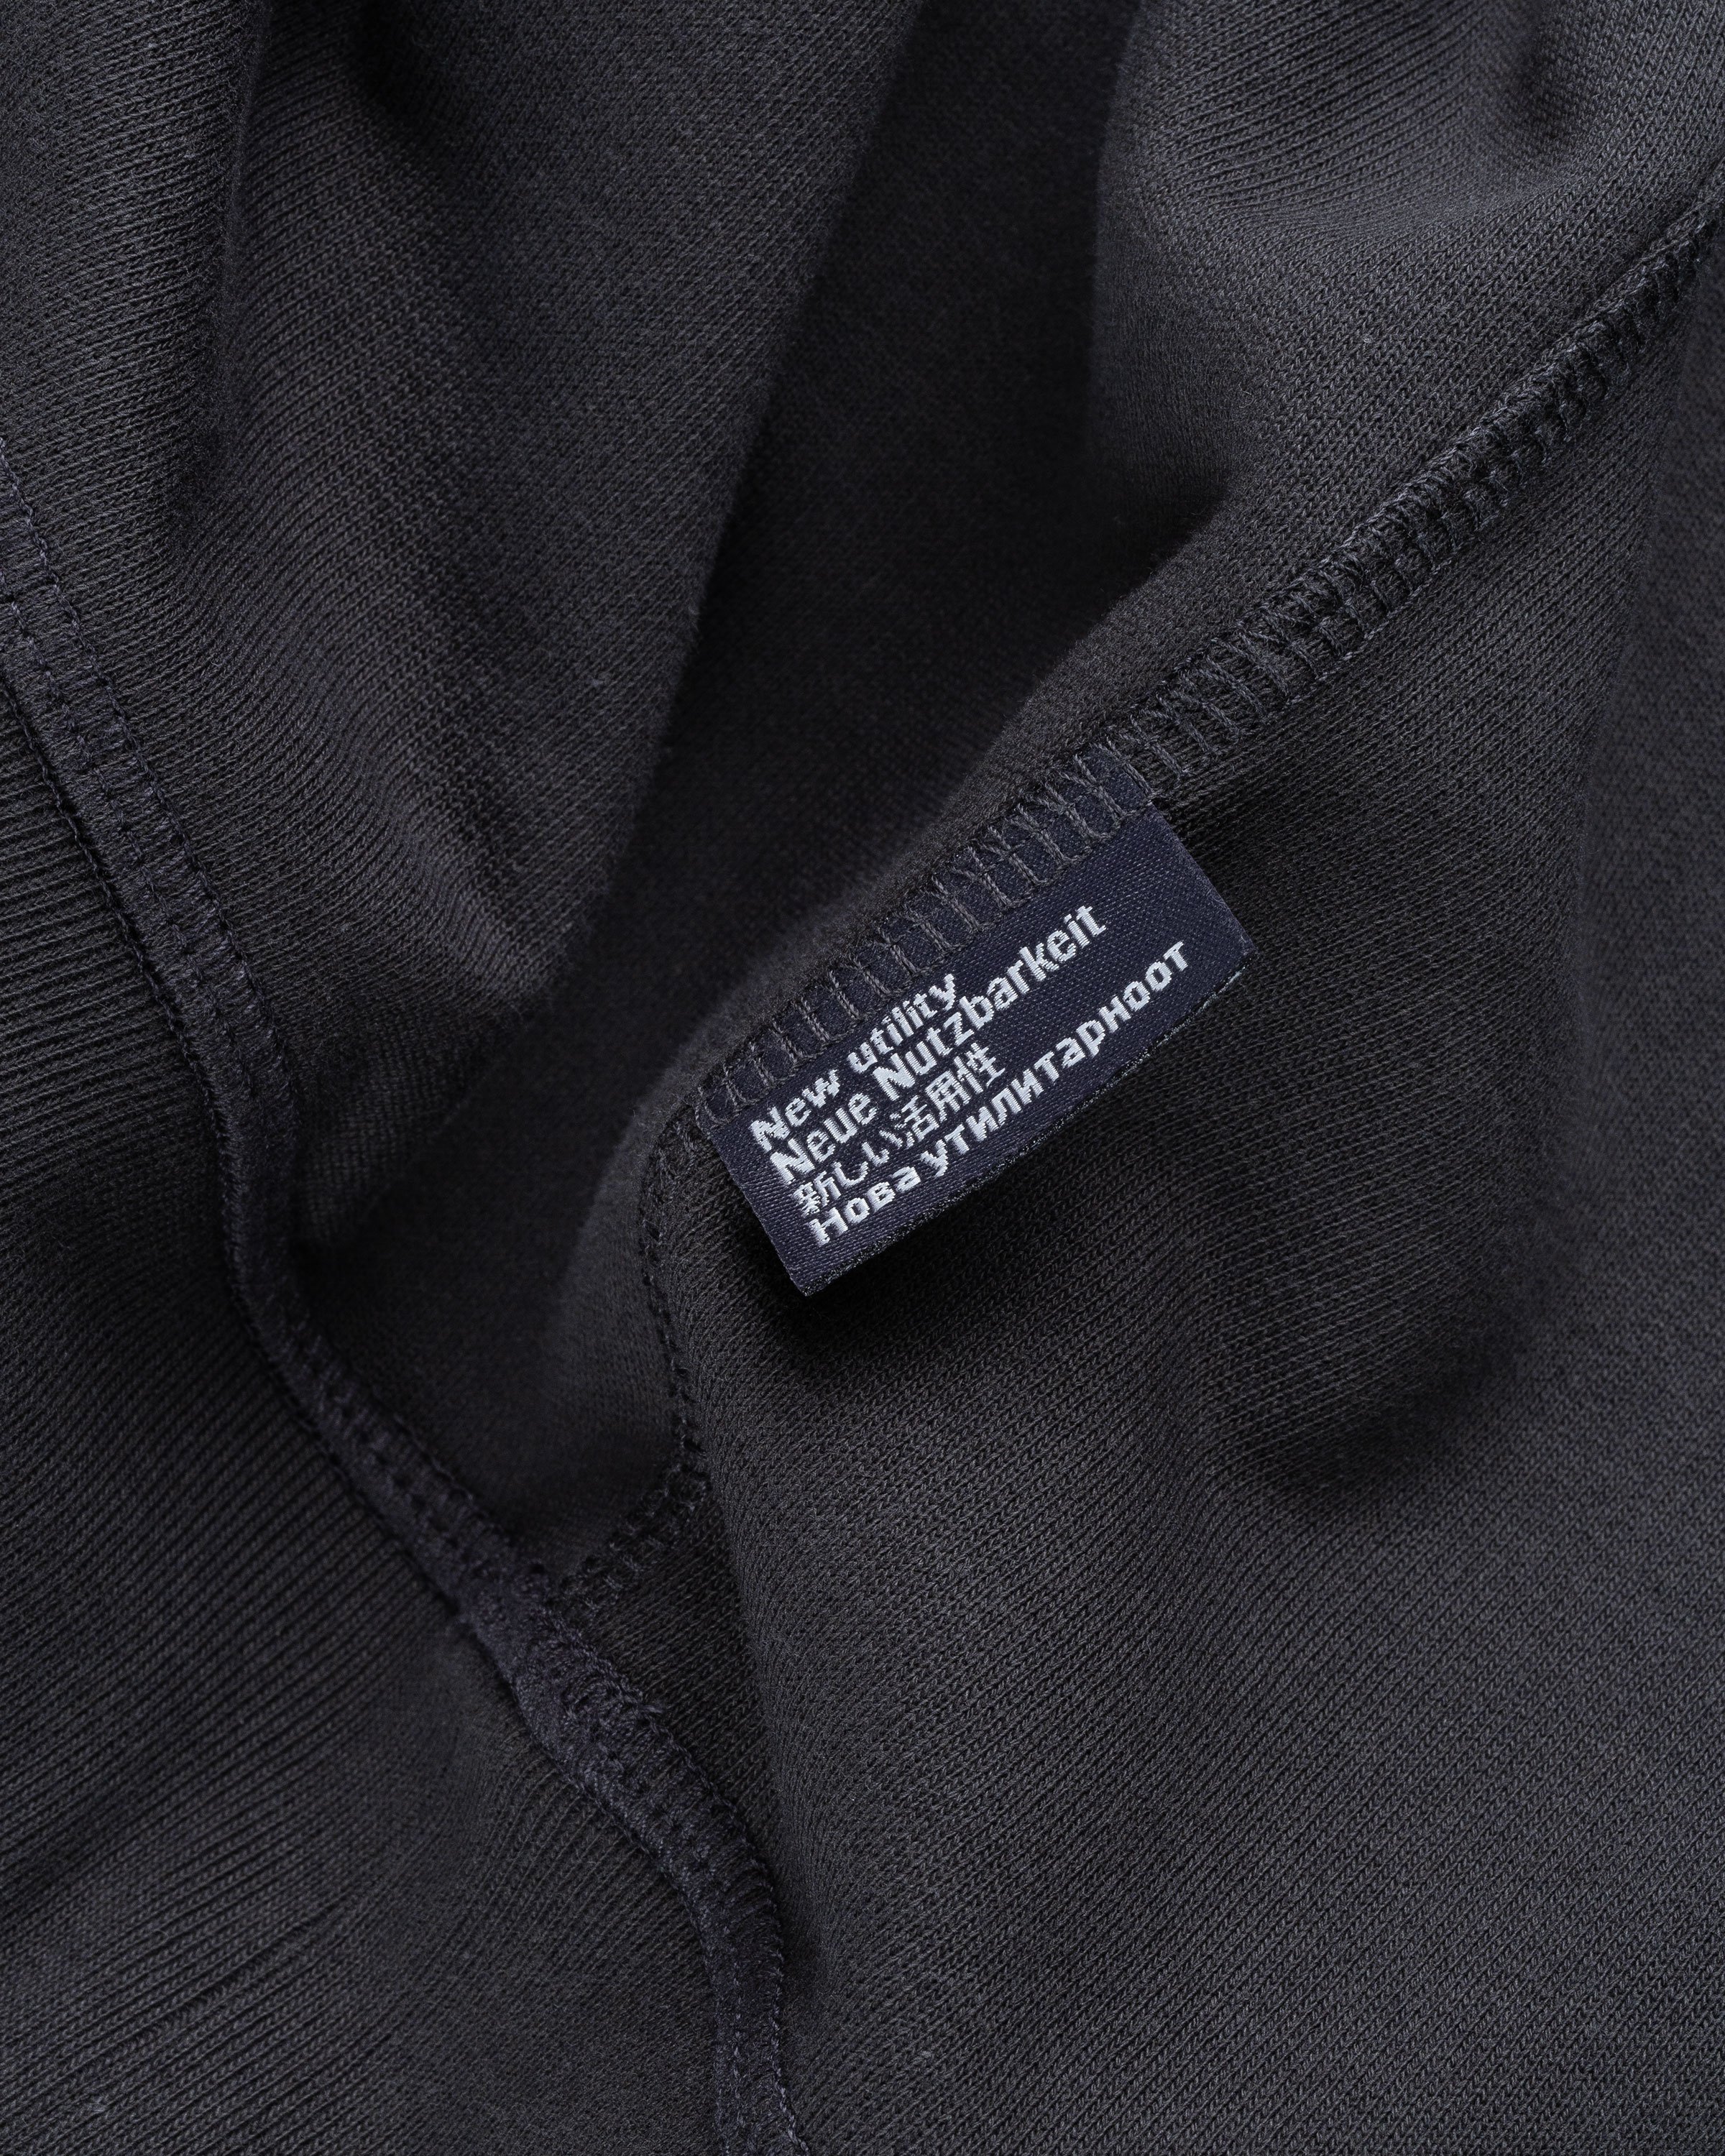 AFFXWRKS - Varsity Sweatshirt Soft Black - Clothing - Black - Image 6